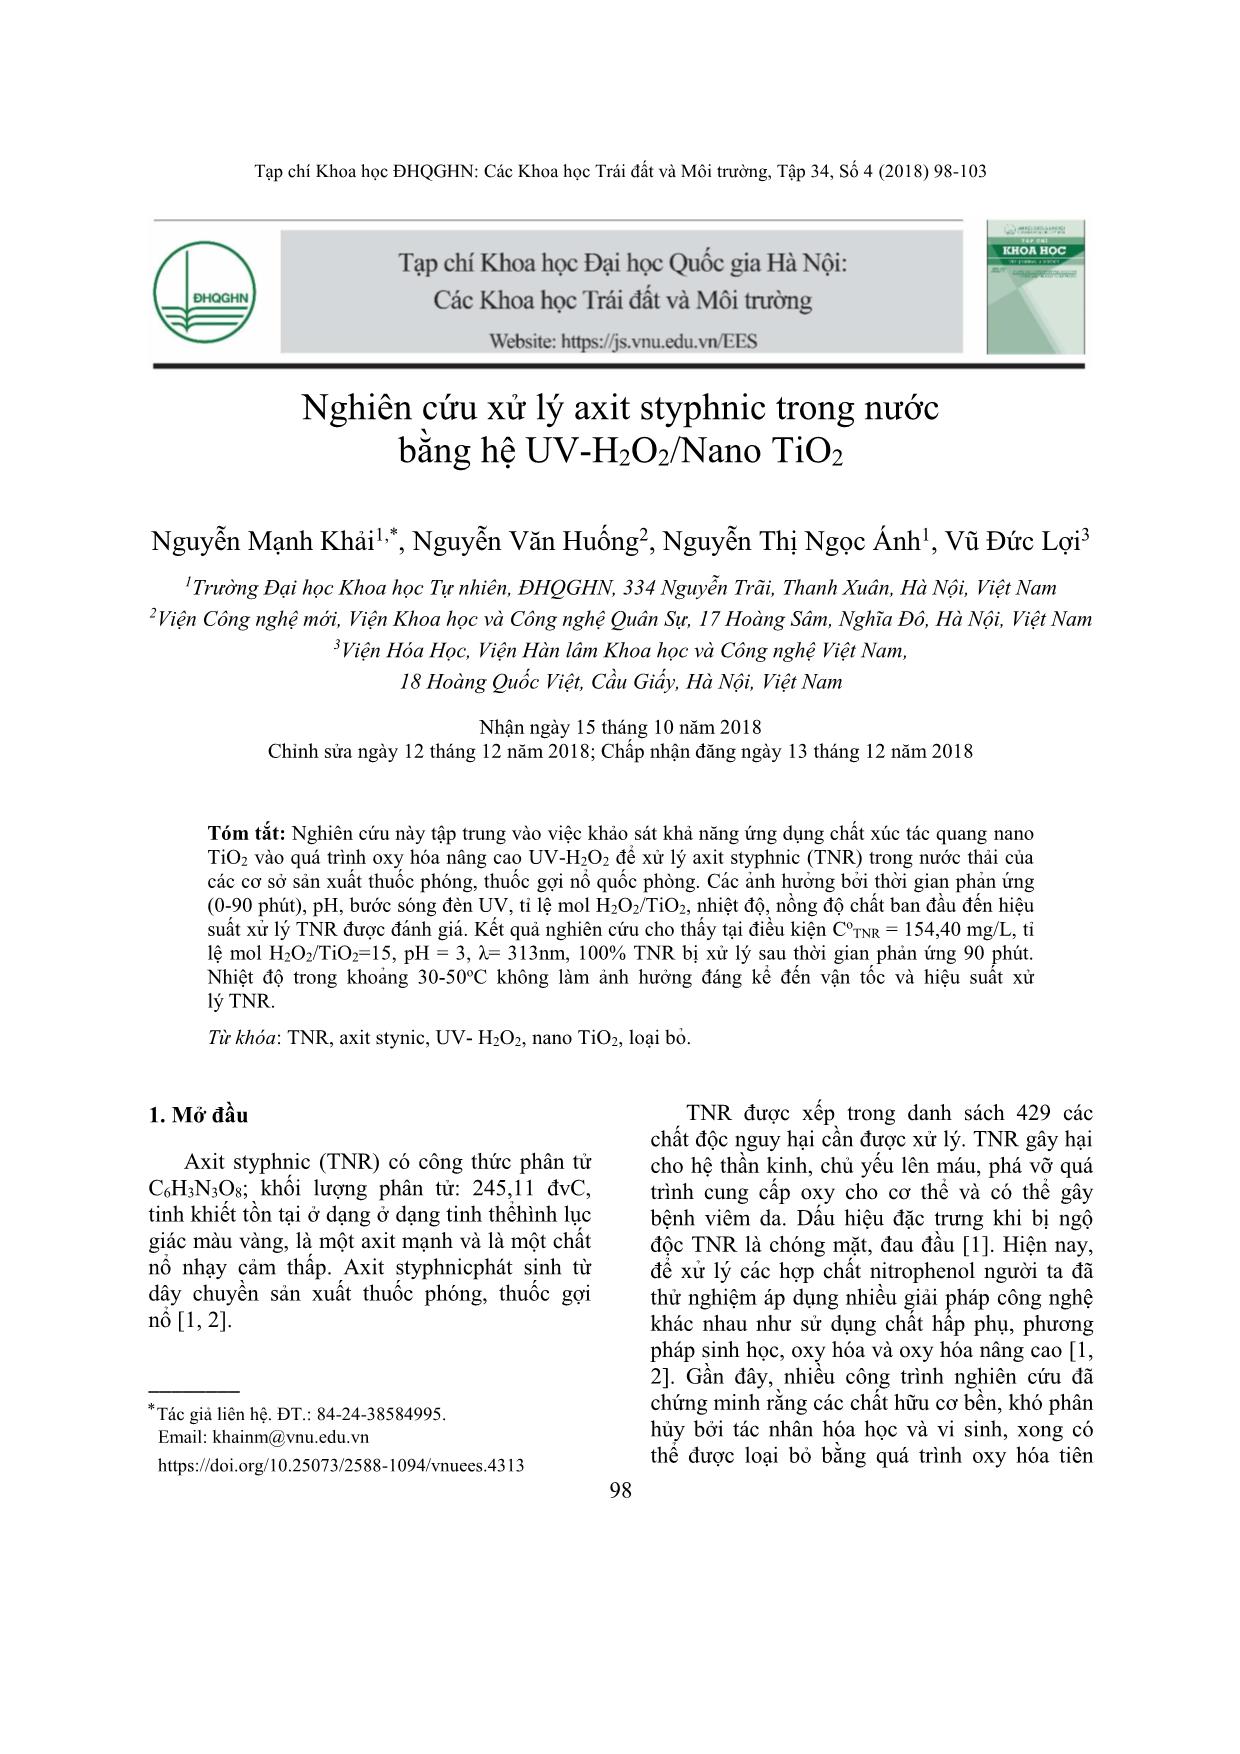 Nghiên cứu xử lý axit styphnic trong nước bằng hệ UV-H₂O₂/Nano TiO₂ trang 1